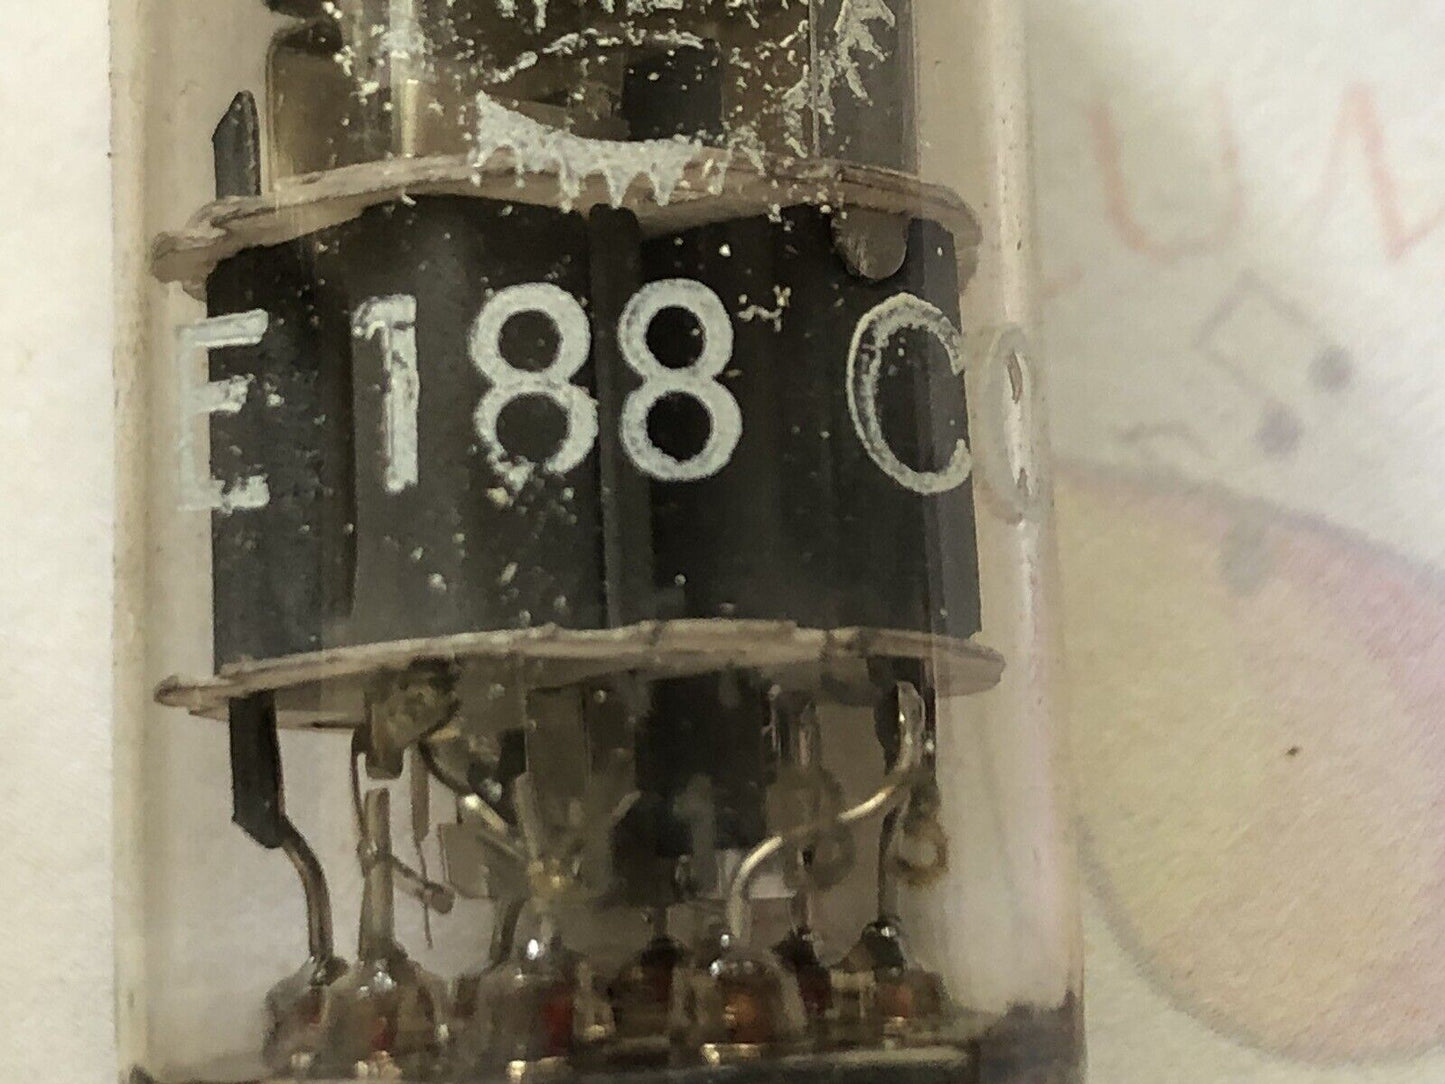 Valvo E188CC 7308 Preamp Tubes - Matched Pair - Holland 1961 - Same code - NOS